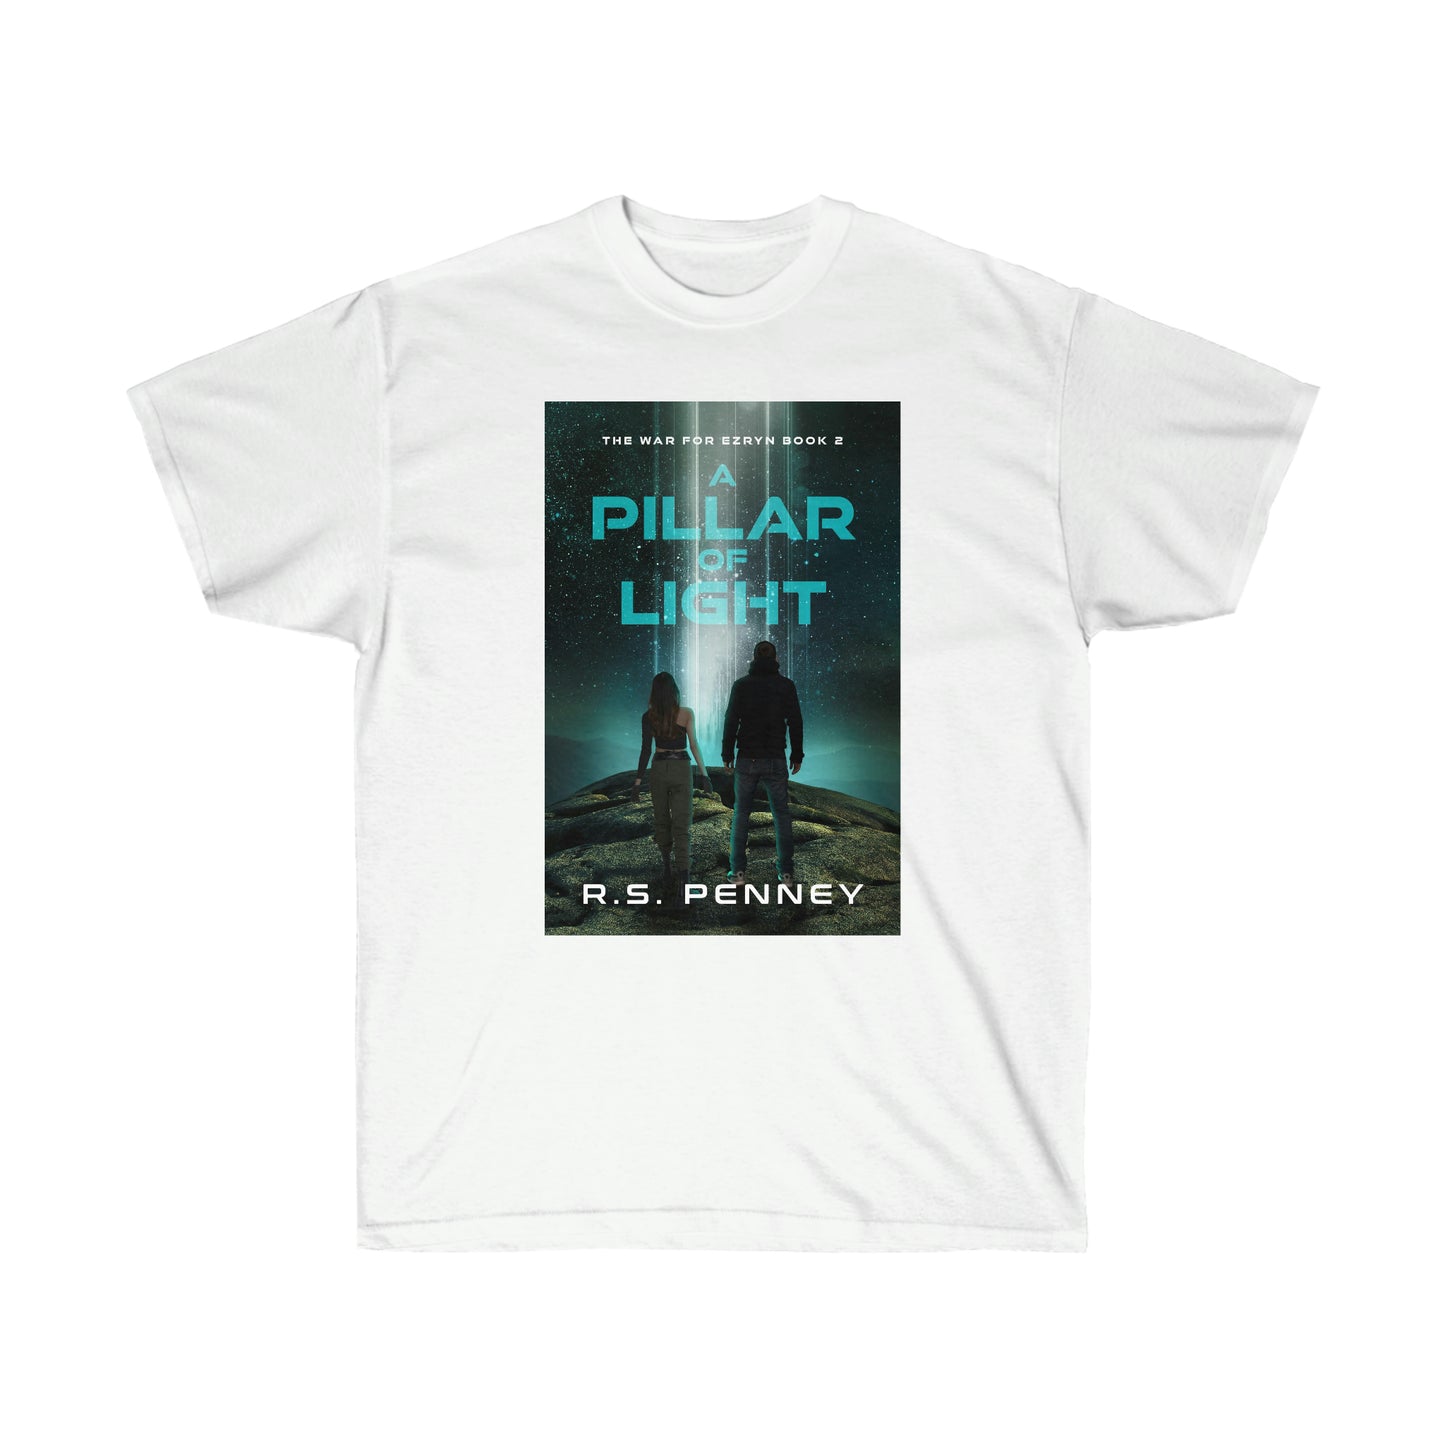 A Pillar Of Light - Unisex T-Shirt